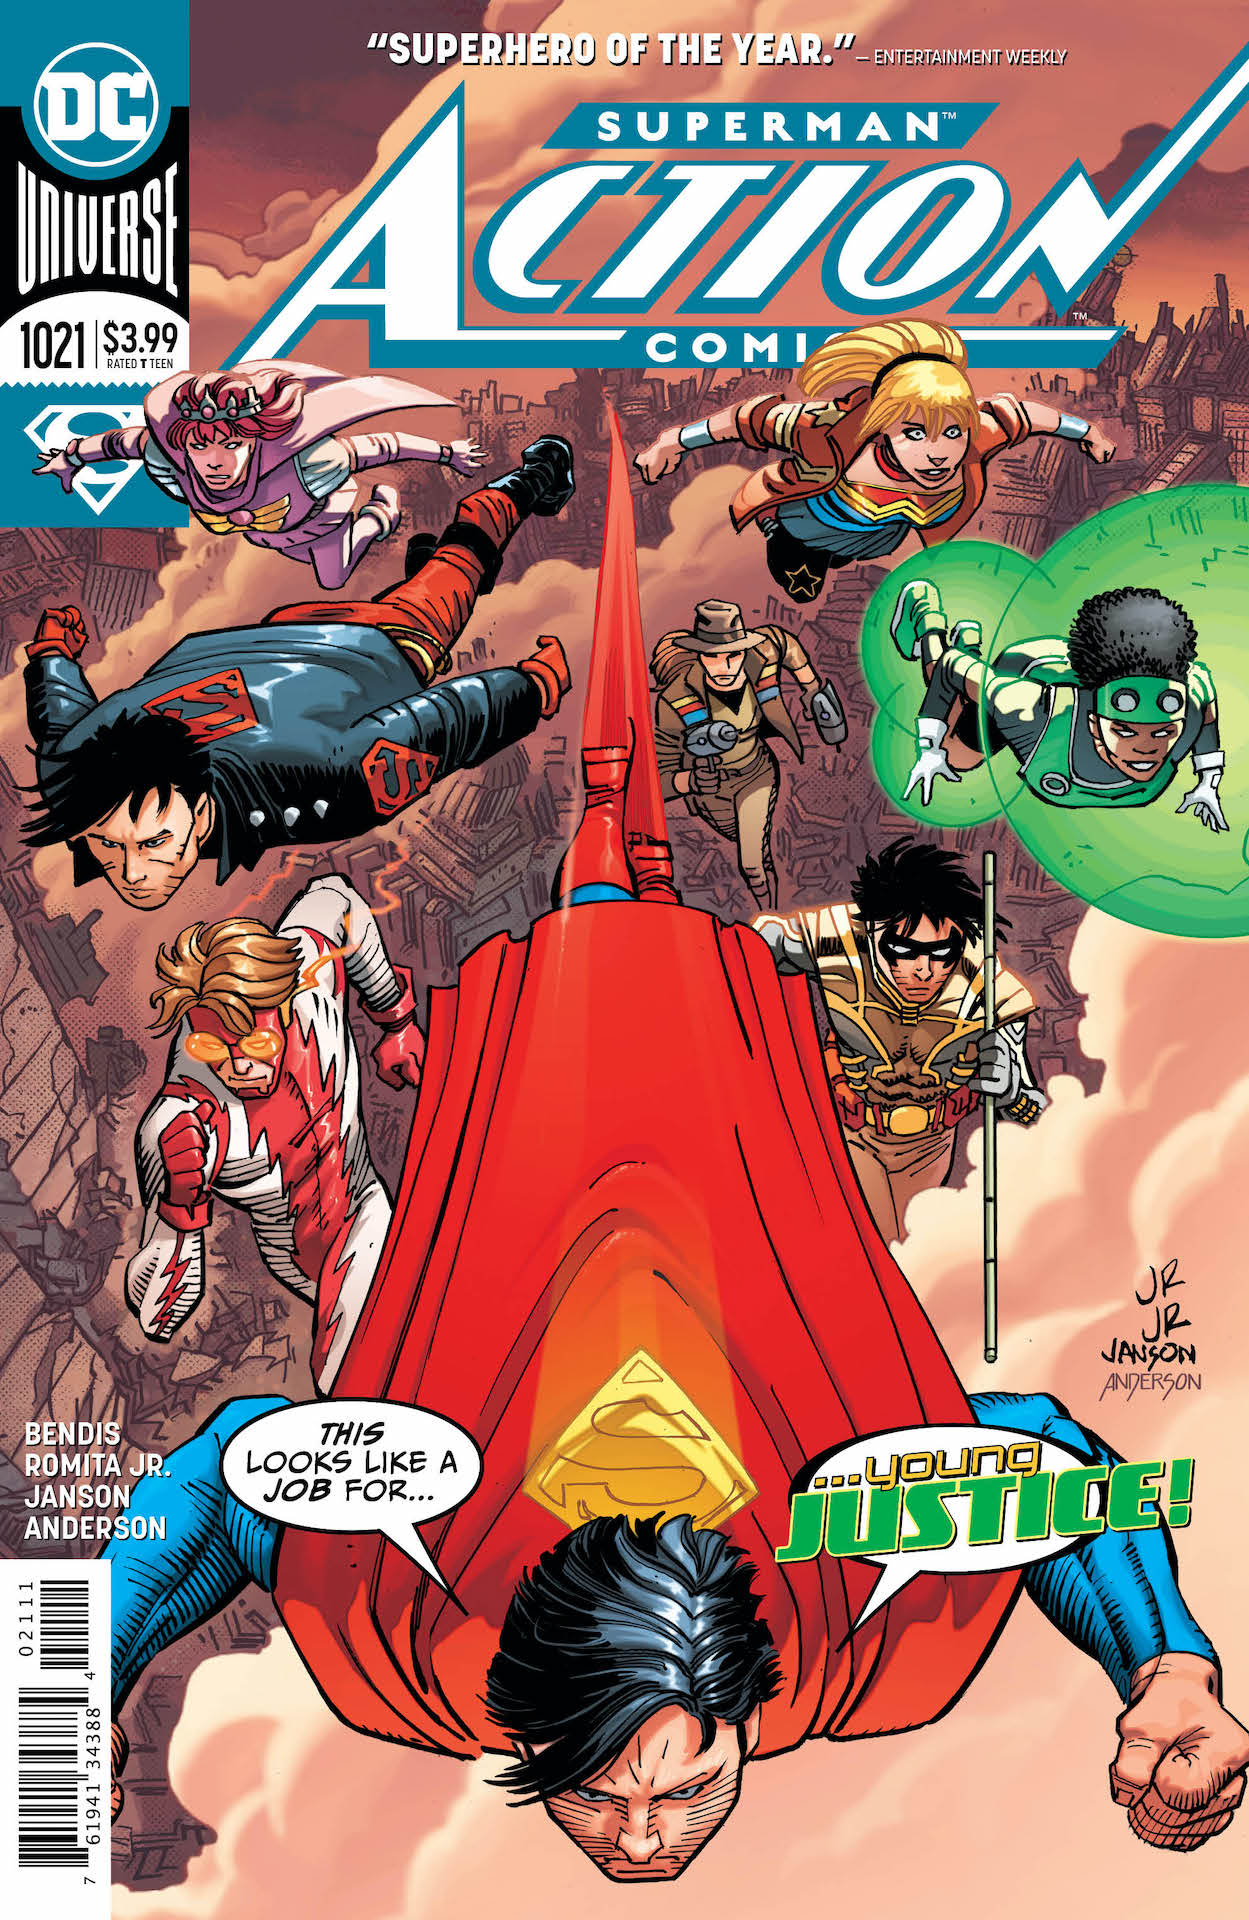 DC Preview: Action Comics #1021